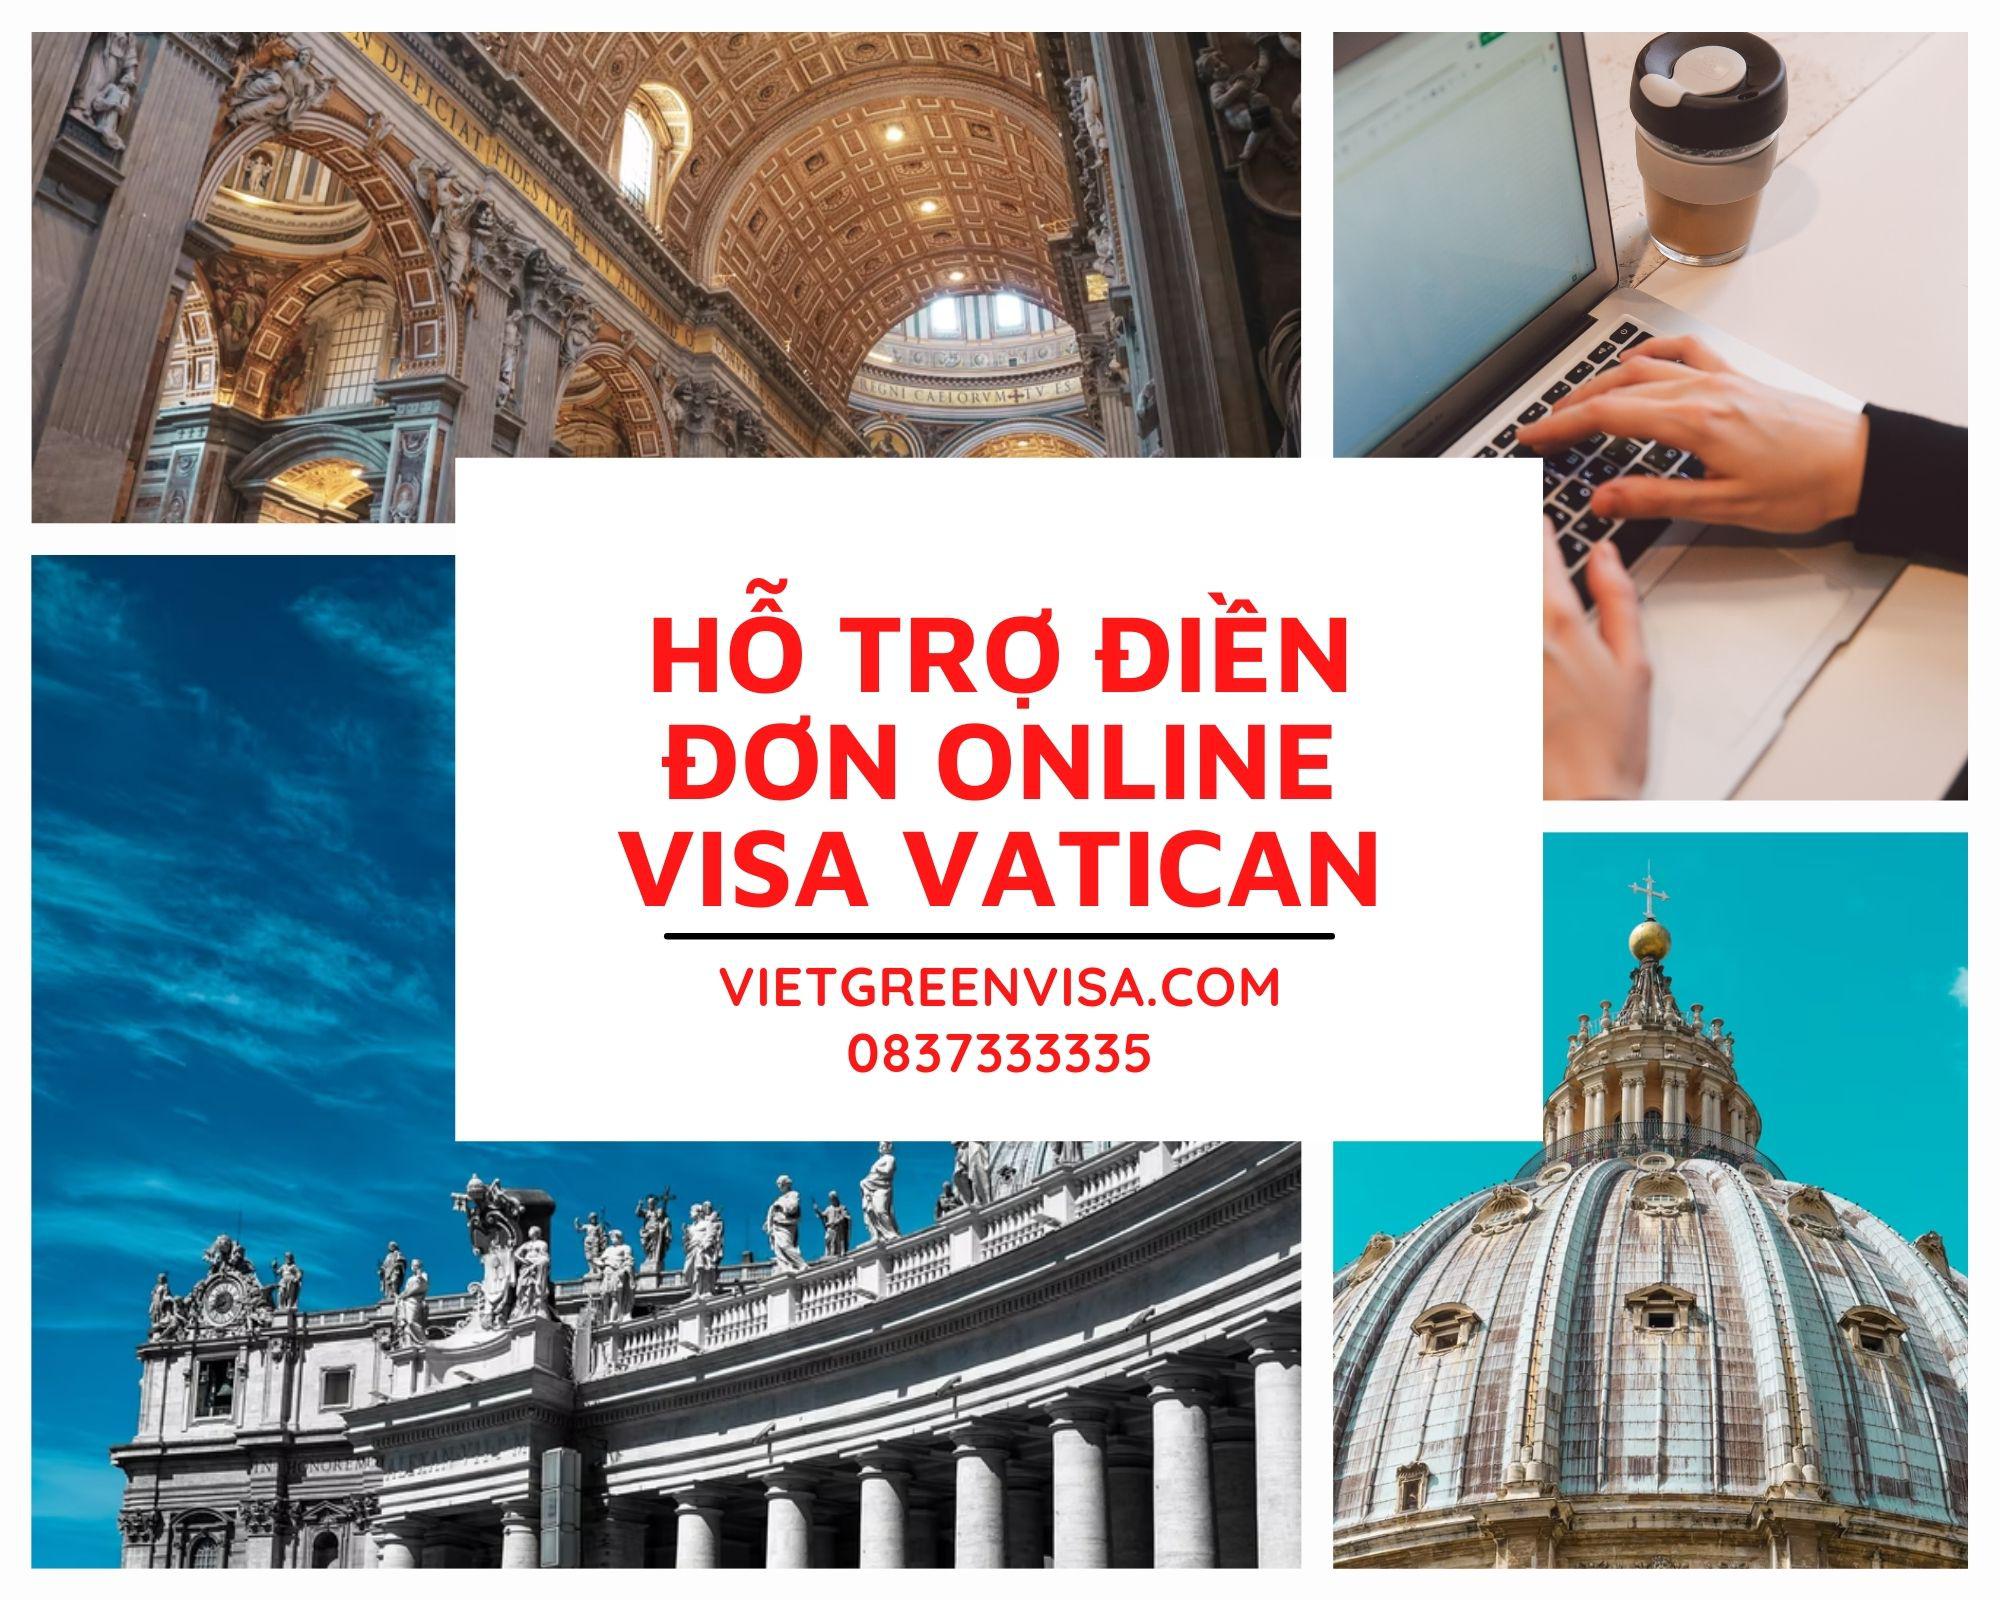 Tư vấn điền đơn visa Vatican online chuyên nghiệp